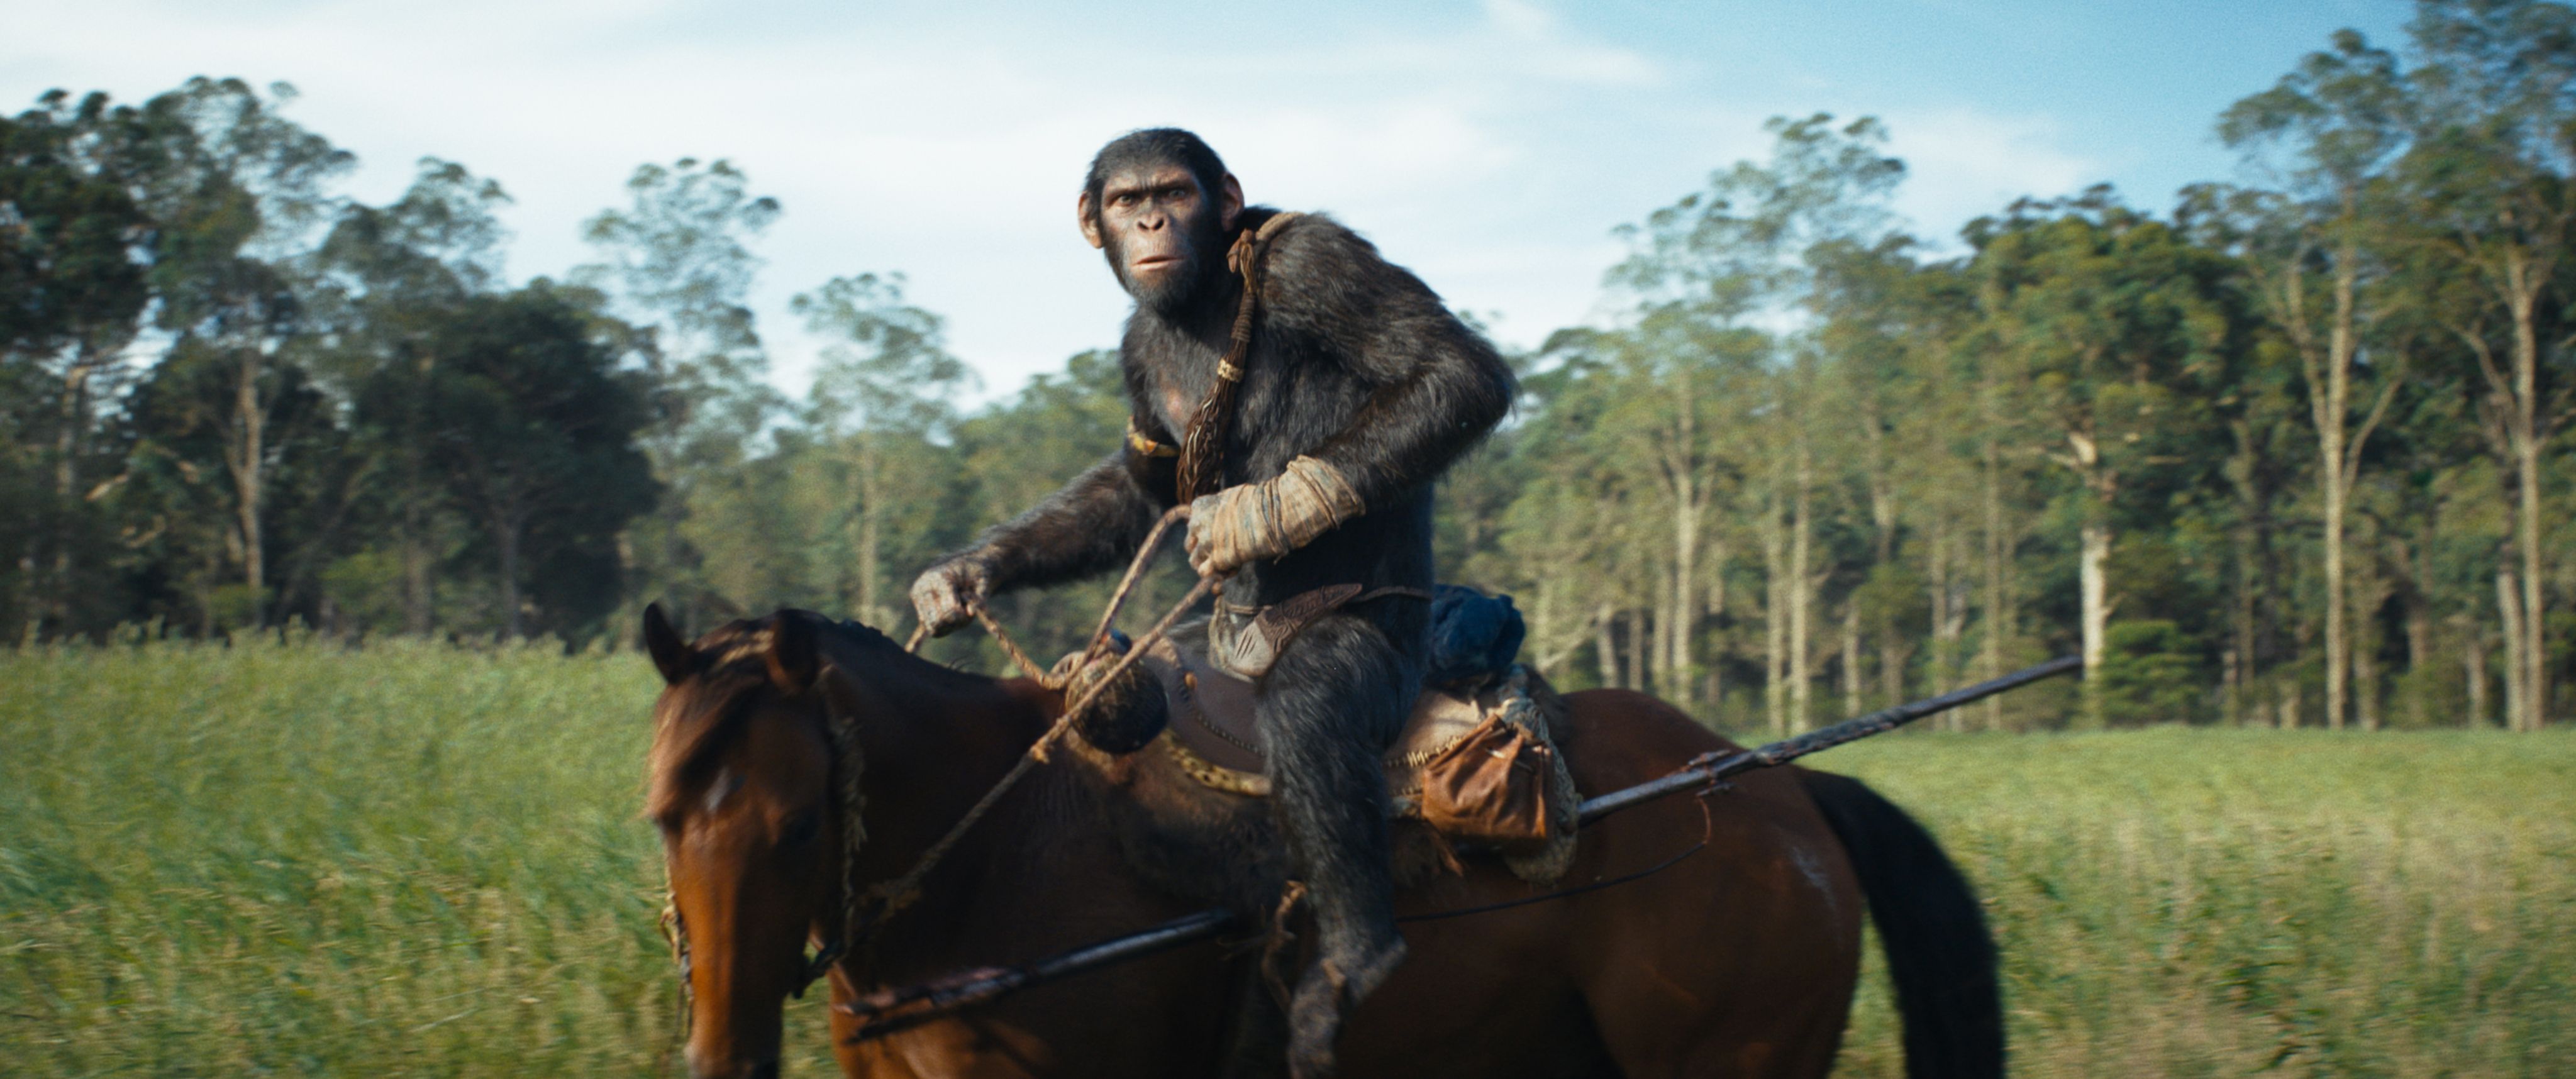 Обзор «Королевства планеты обезьян»: сильное возвращение франшизы